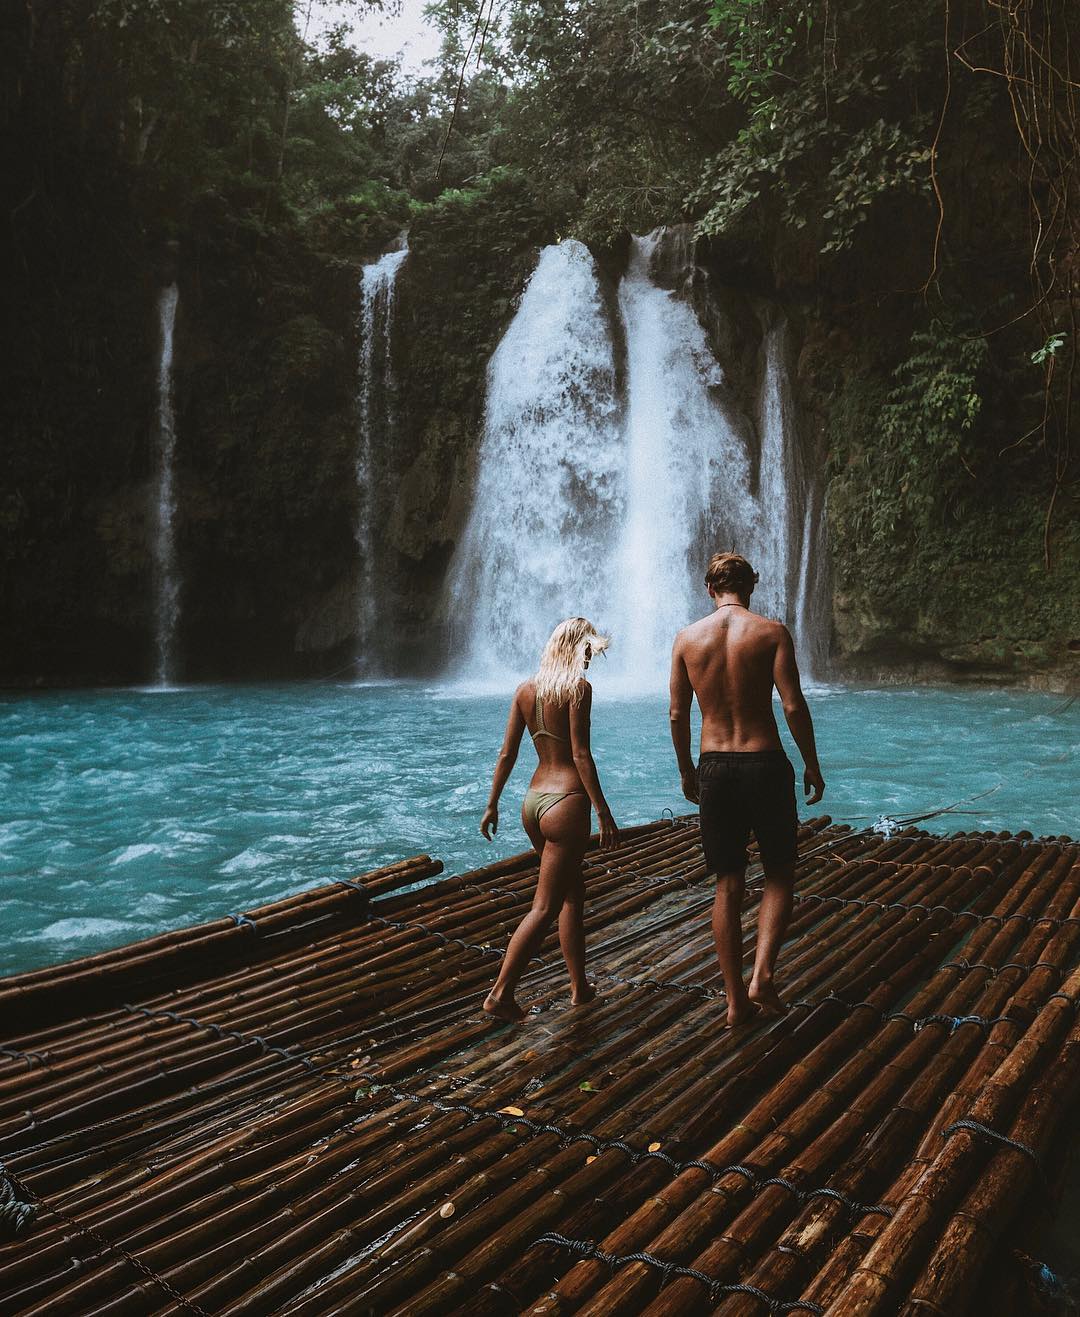 Пара делится своими замечательными снимками из путешествий в Instagram